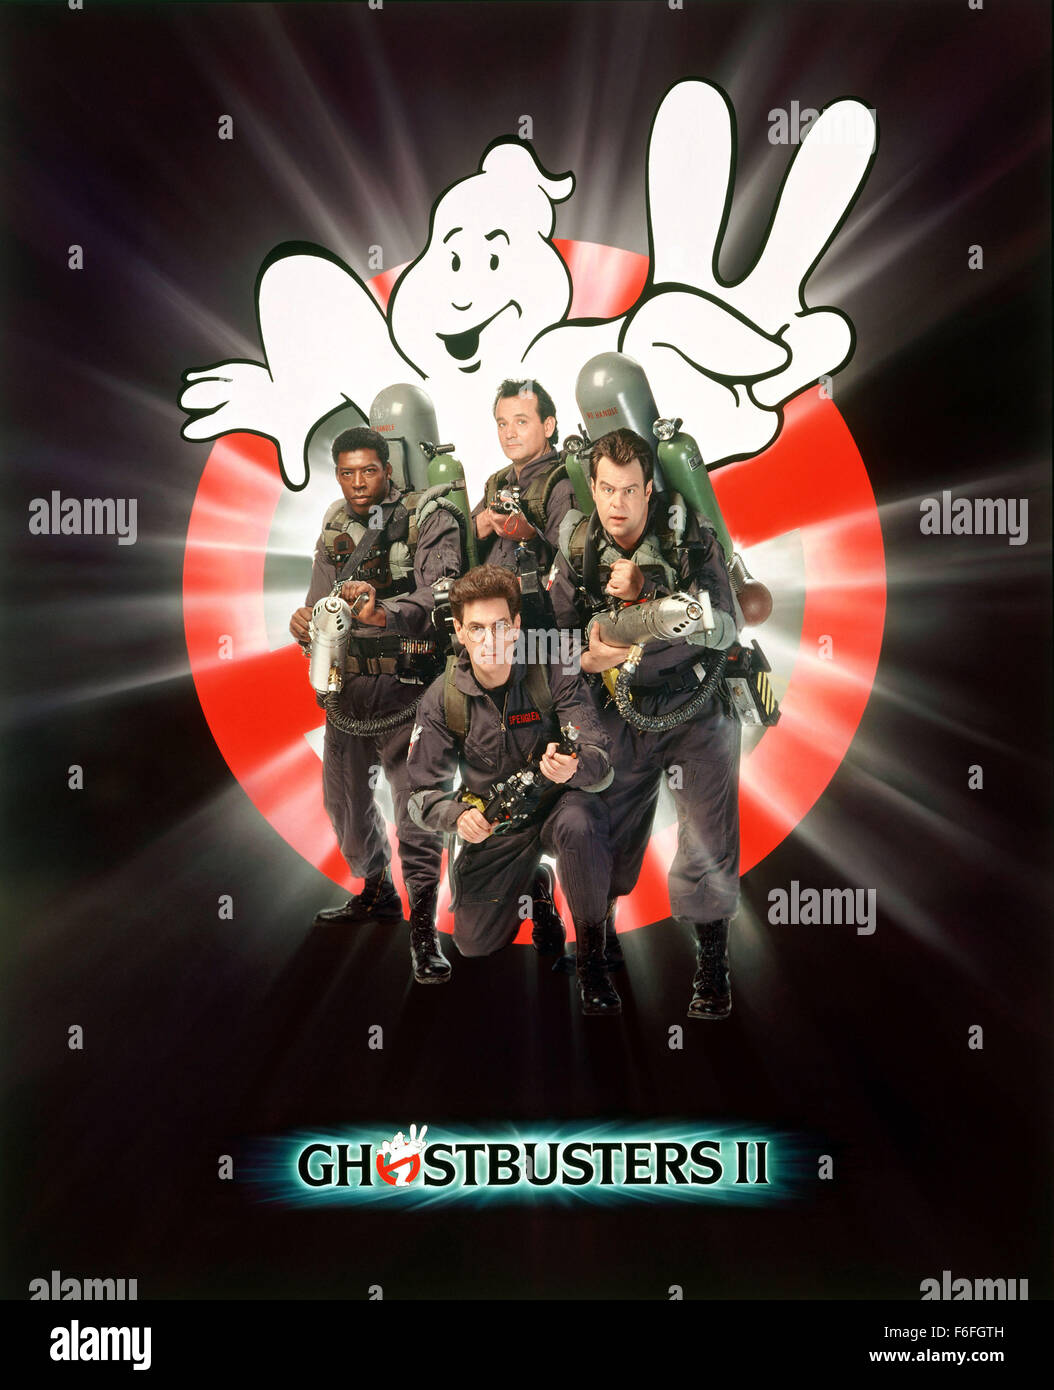 Rilasciato: Jun 16, 1989 - filmato originale titolo: Ghostbusters 2. Locandina per sci-fi comedy avventura 'Ghostbusters II' Foto Stock